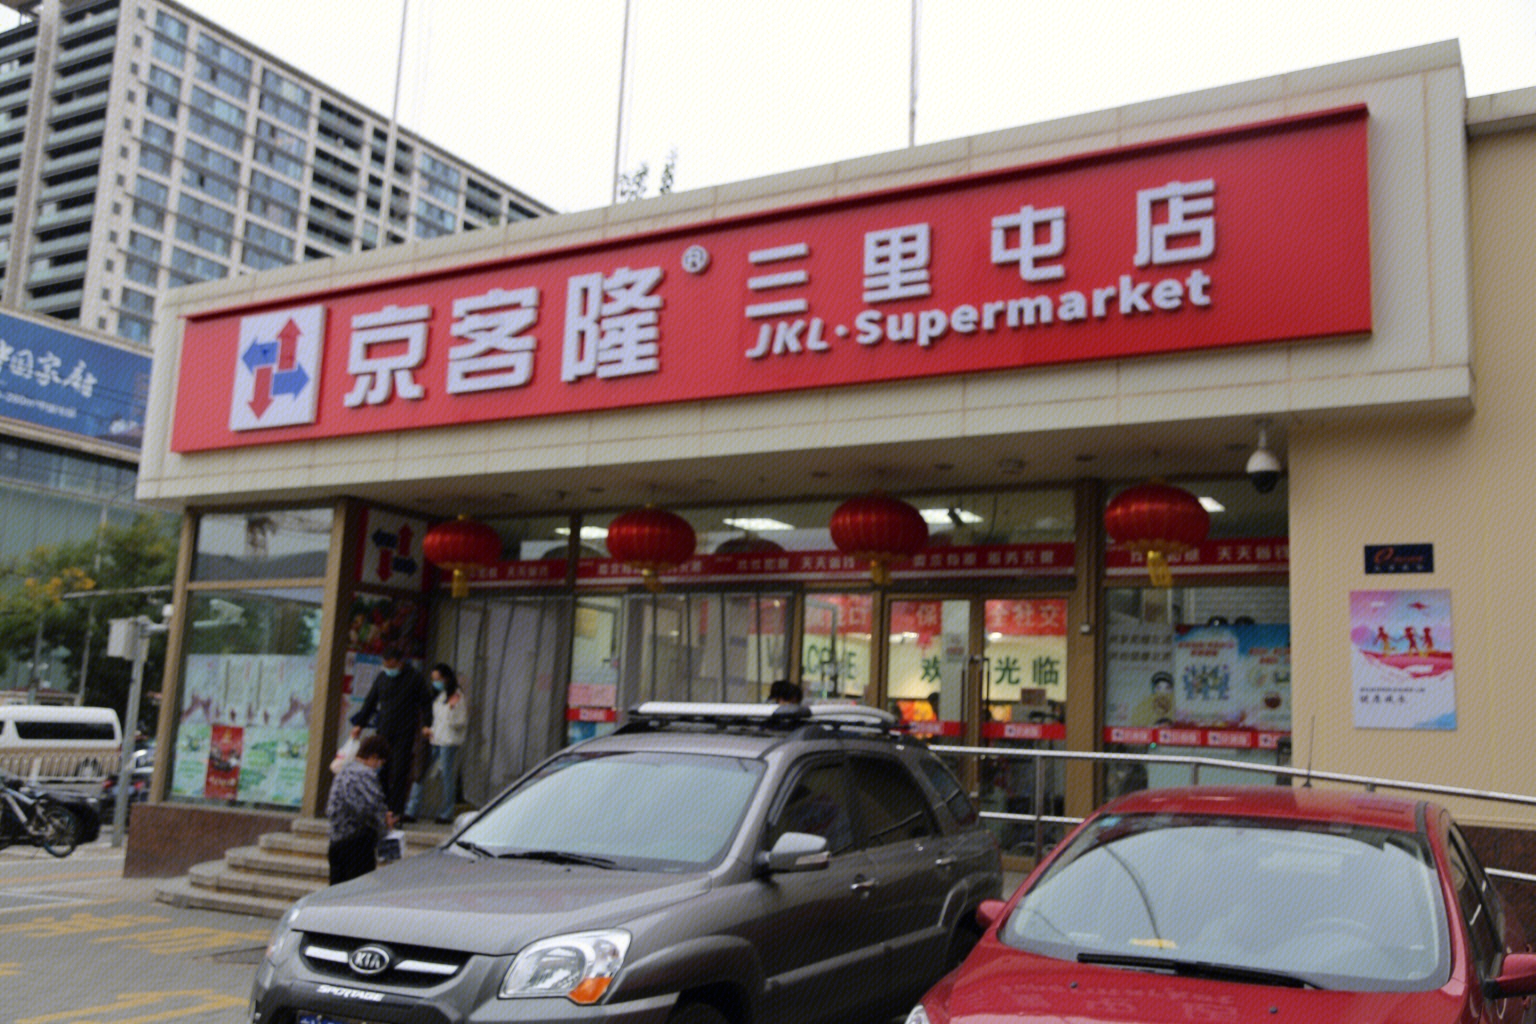 京客隆超市京客隆超市：营业时间、特色商品和服务 京客隆超市营业时间